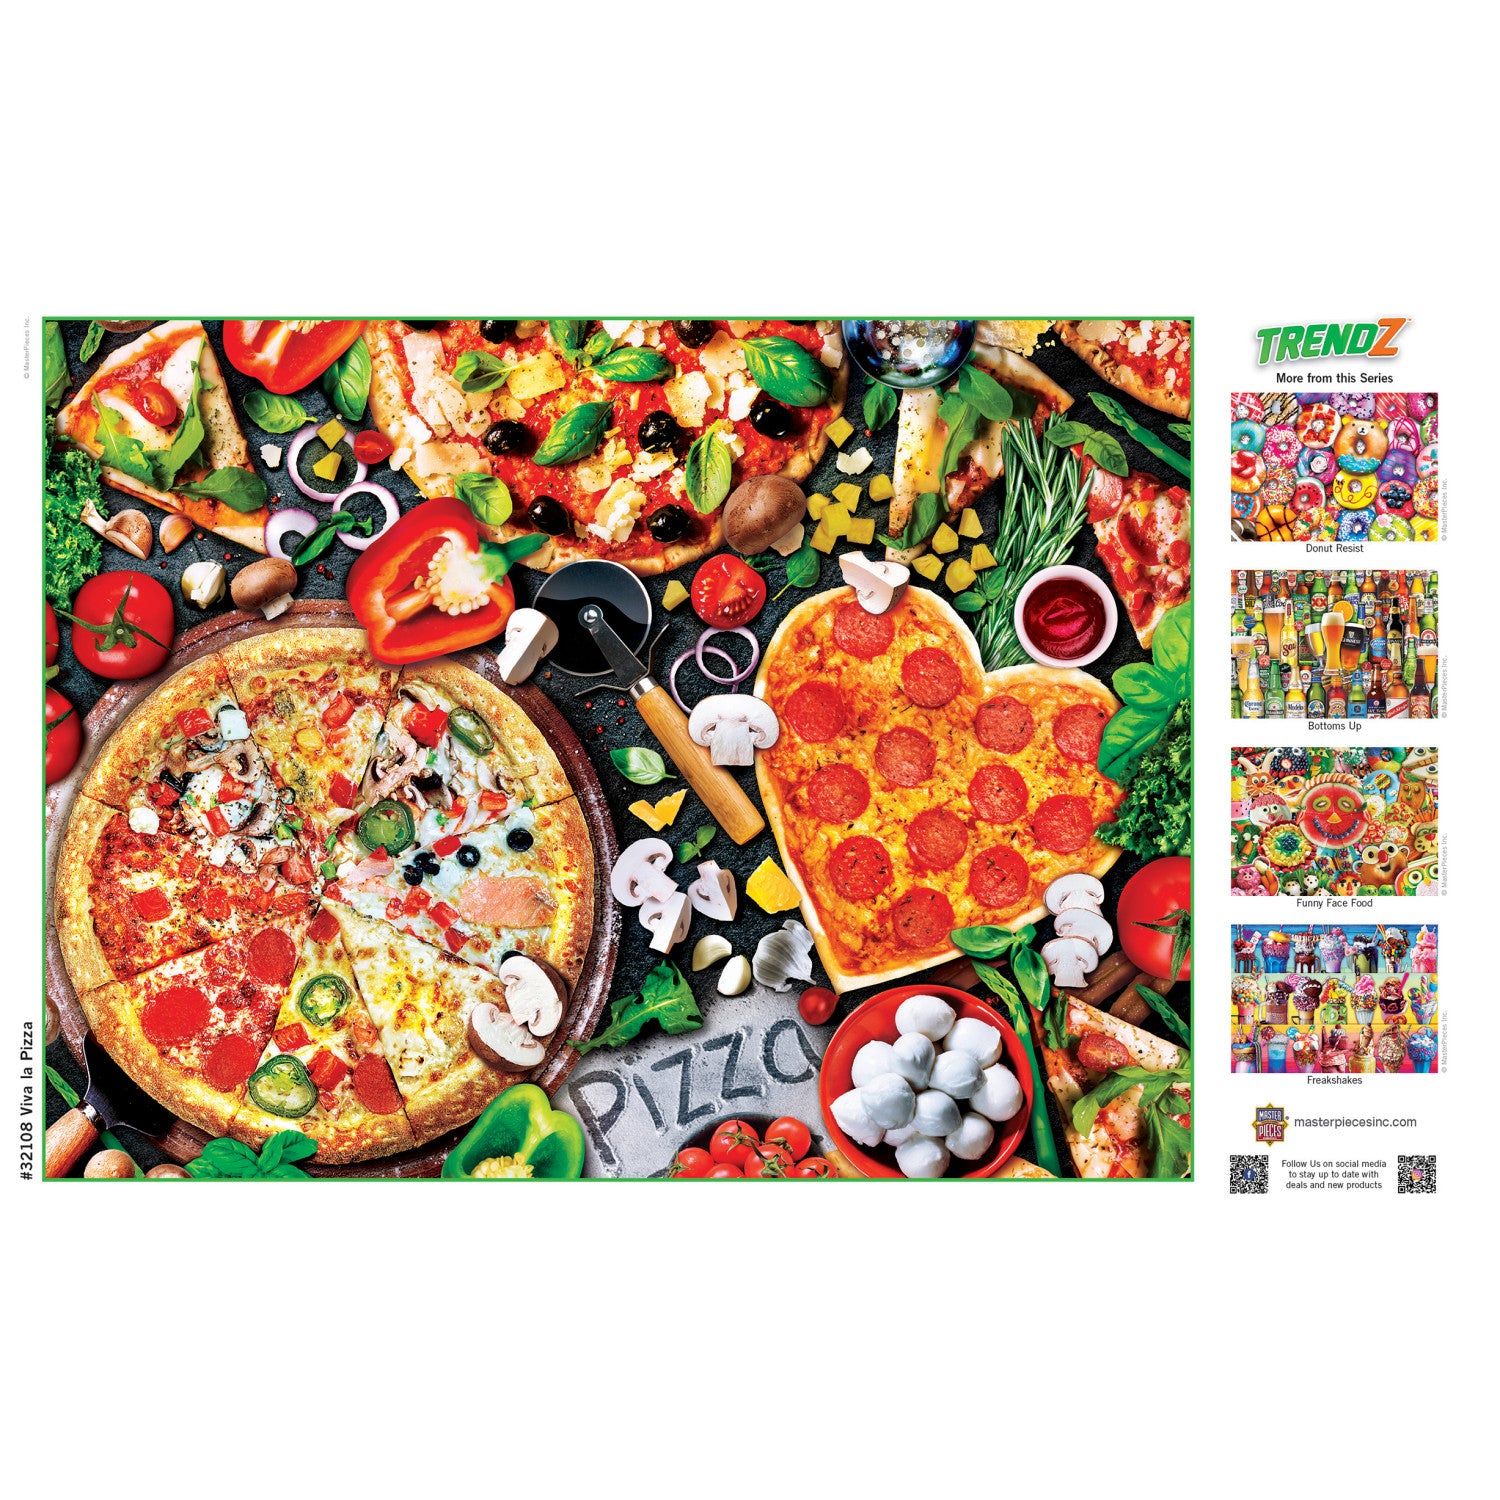 Trendz - Viva La Pizza 300 Piece EZ Grip Puzzle